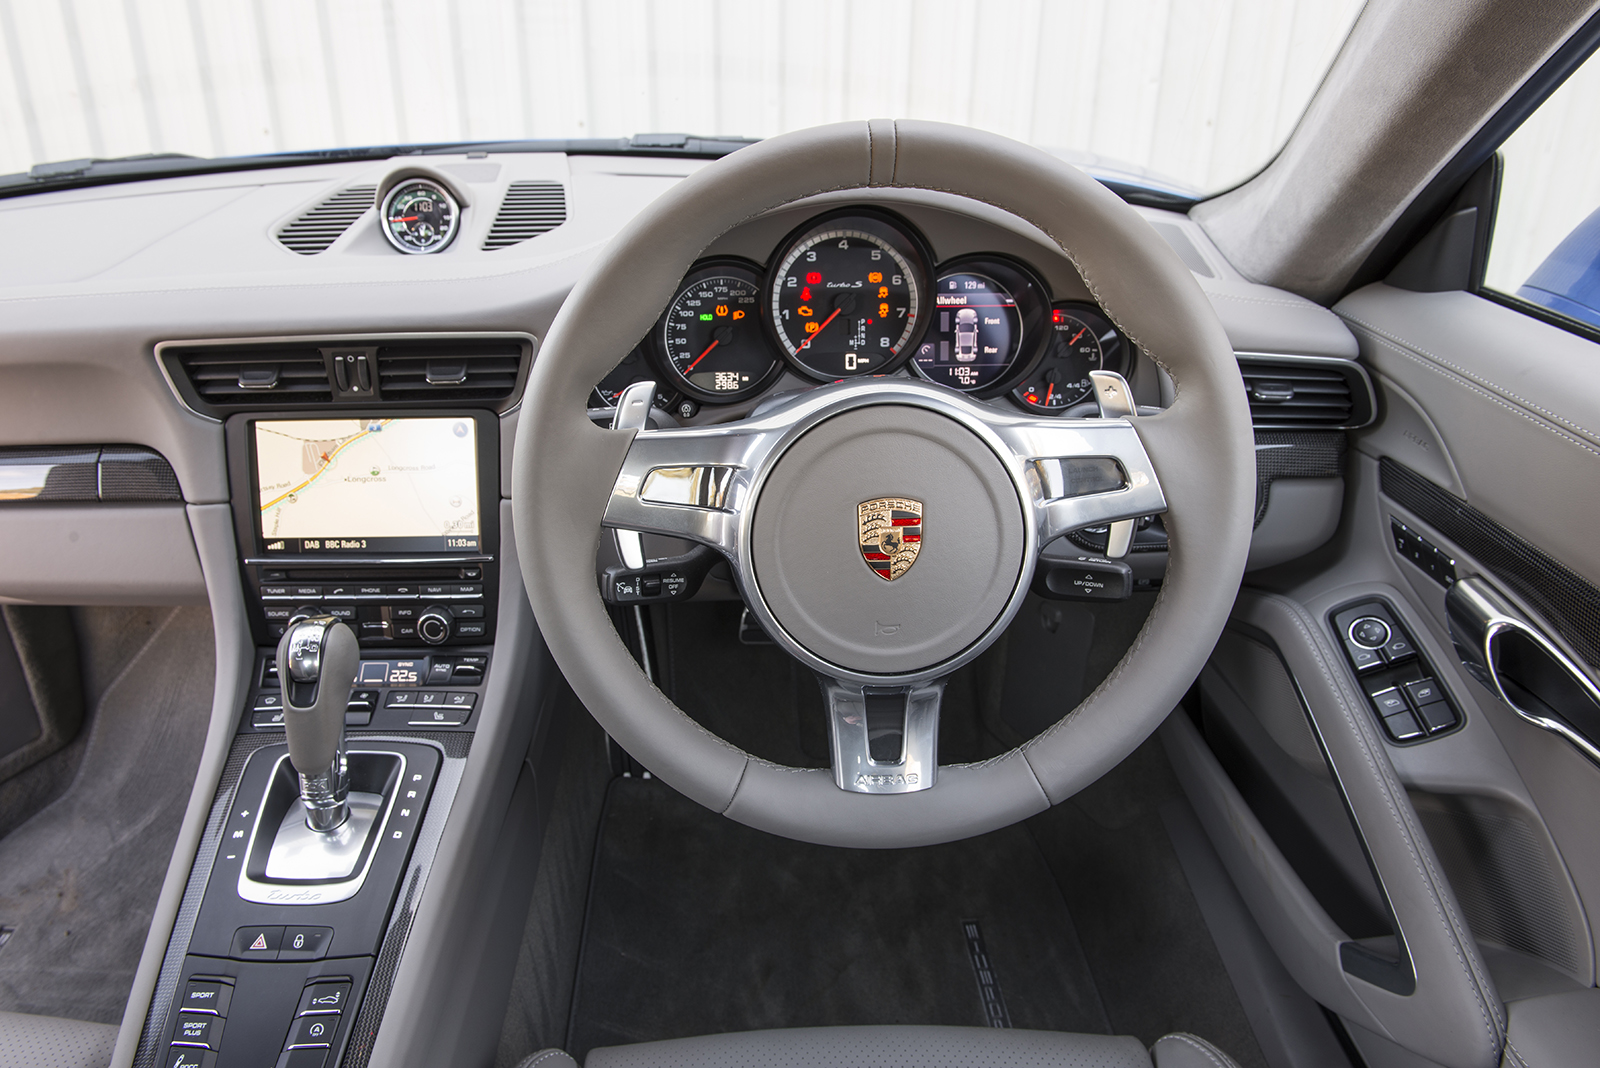 Porsche 911 Turbo dashboard